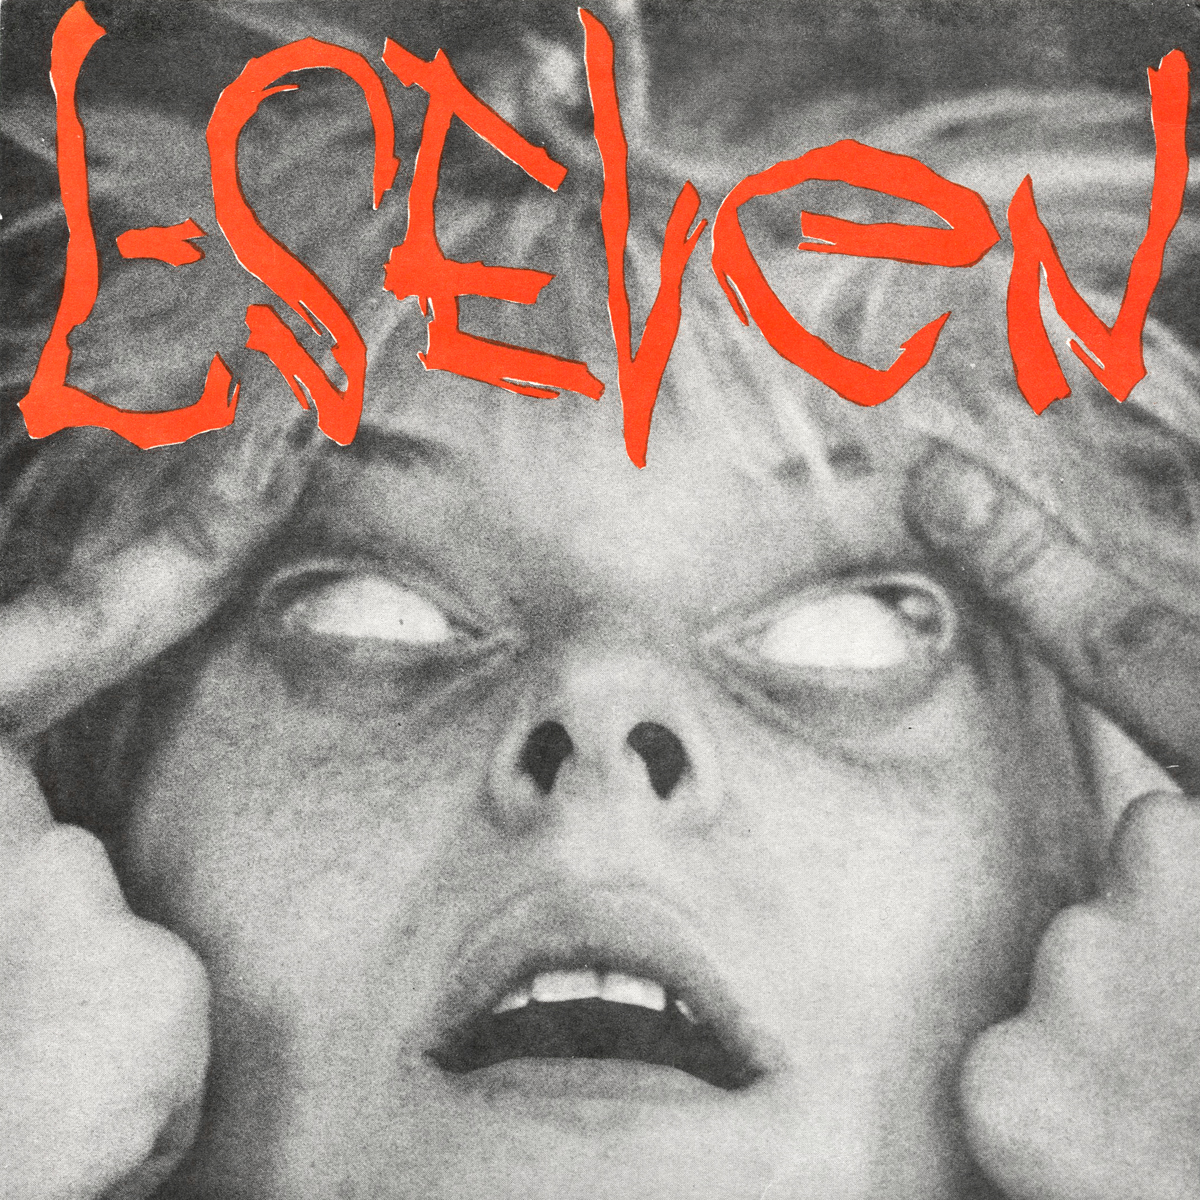 Detroit’s L-SEVEN has a unique neo-psychedelic sound... 